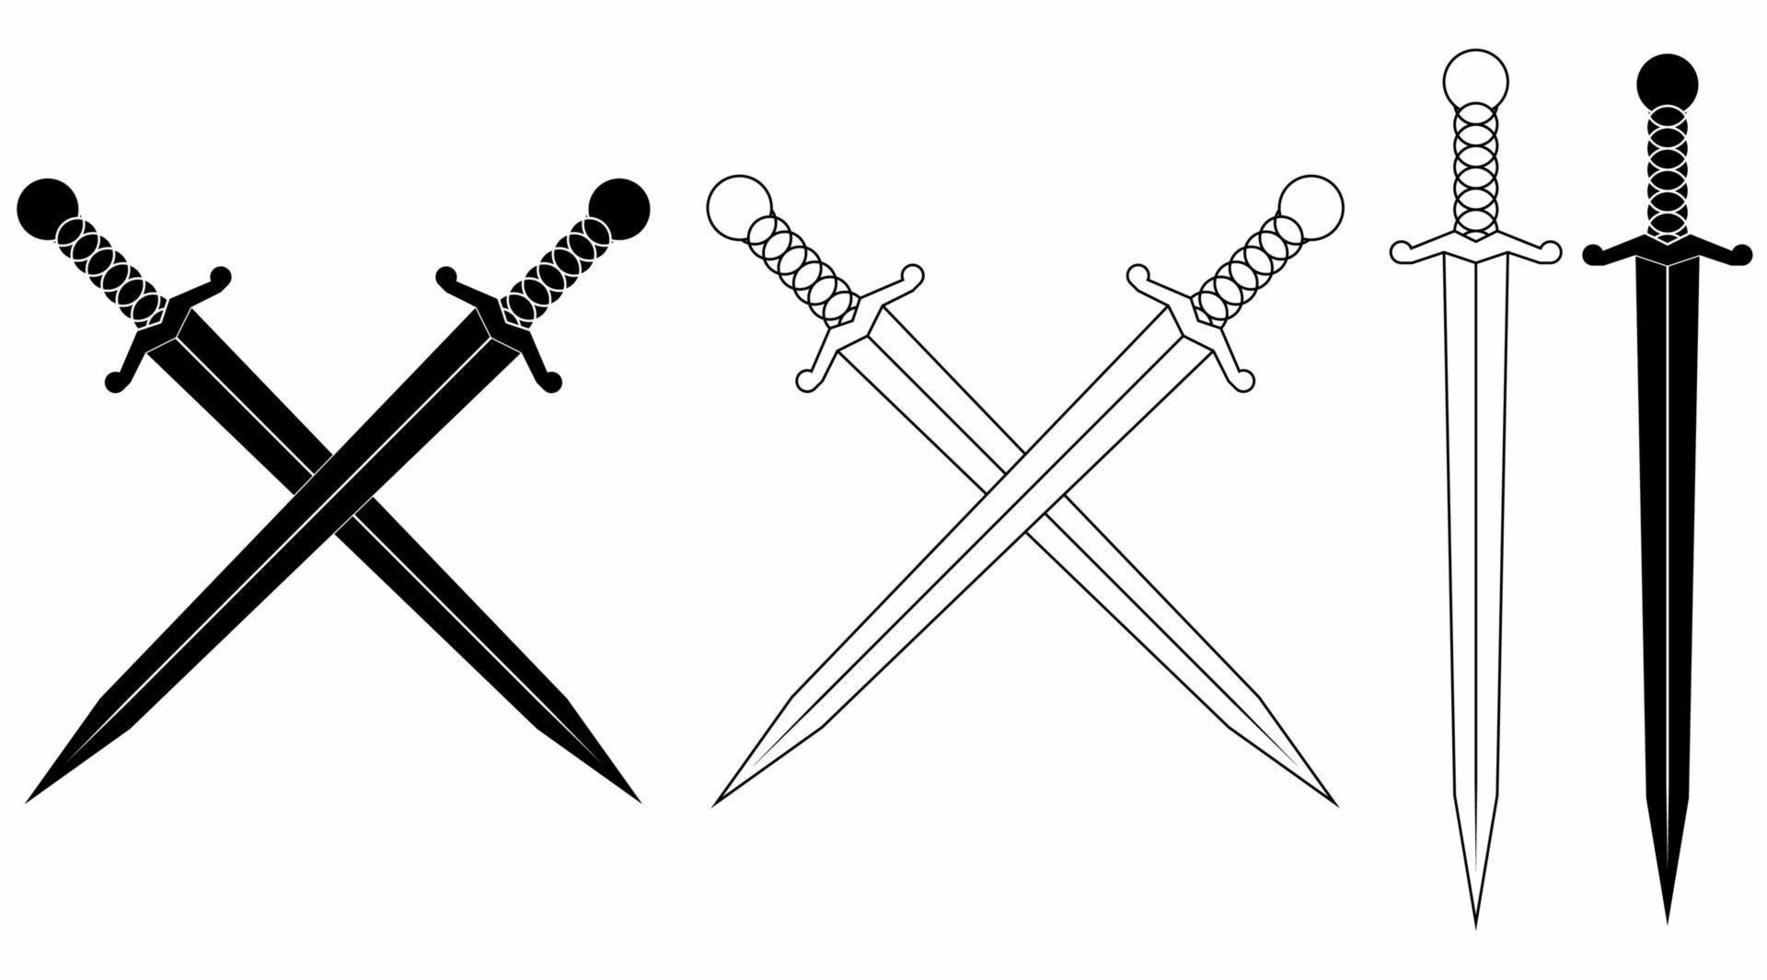 contours silhouette croix épée icon set isolé sur fond blanc vecteur